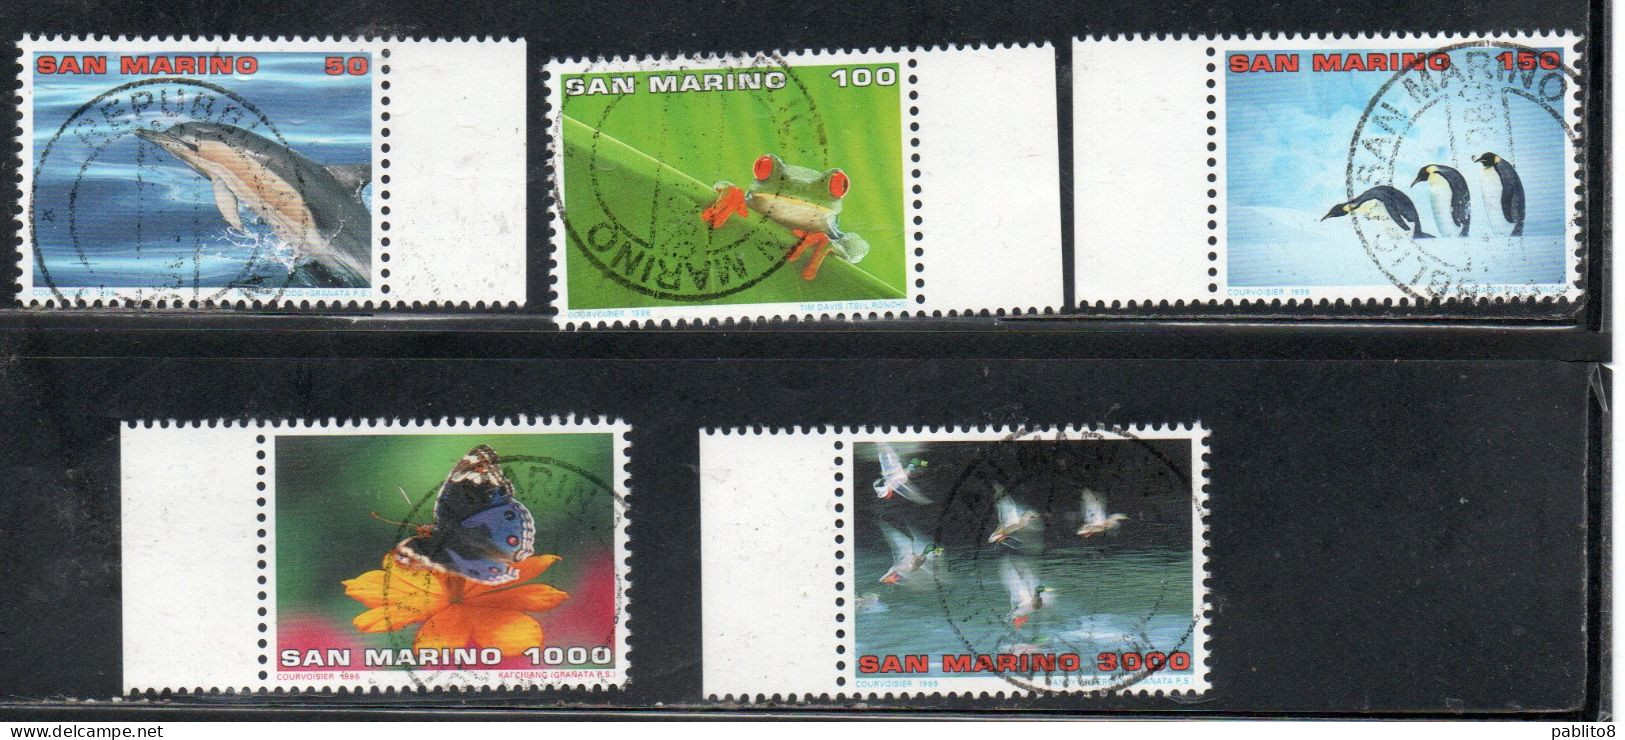 REPUBBLICA DI SAN MARINO 1996 MONDO NATURA WORLD NATURE SERIE COMPLETA COMPLETE SET USATA USED OBLITERE' - Used Stamps